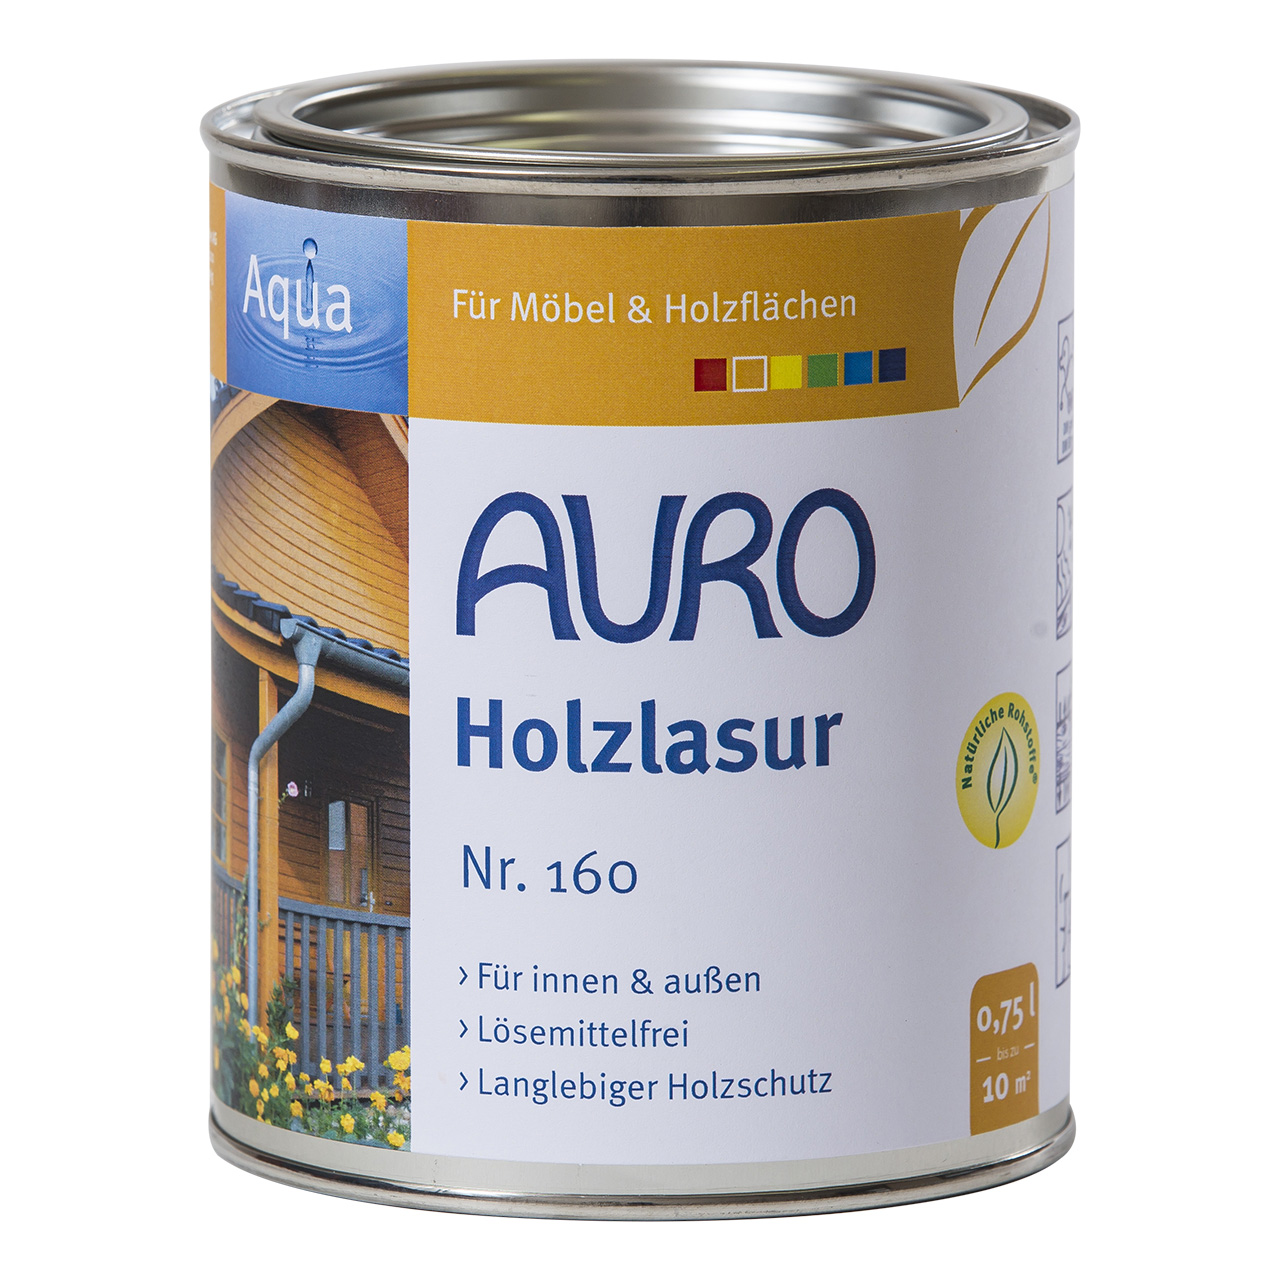 Auro Holzlasur Nr. 160, 0,75L